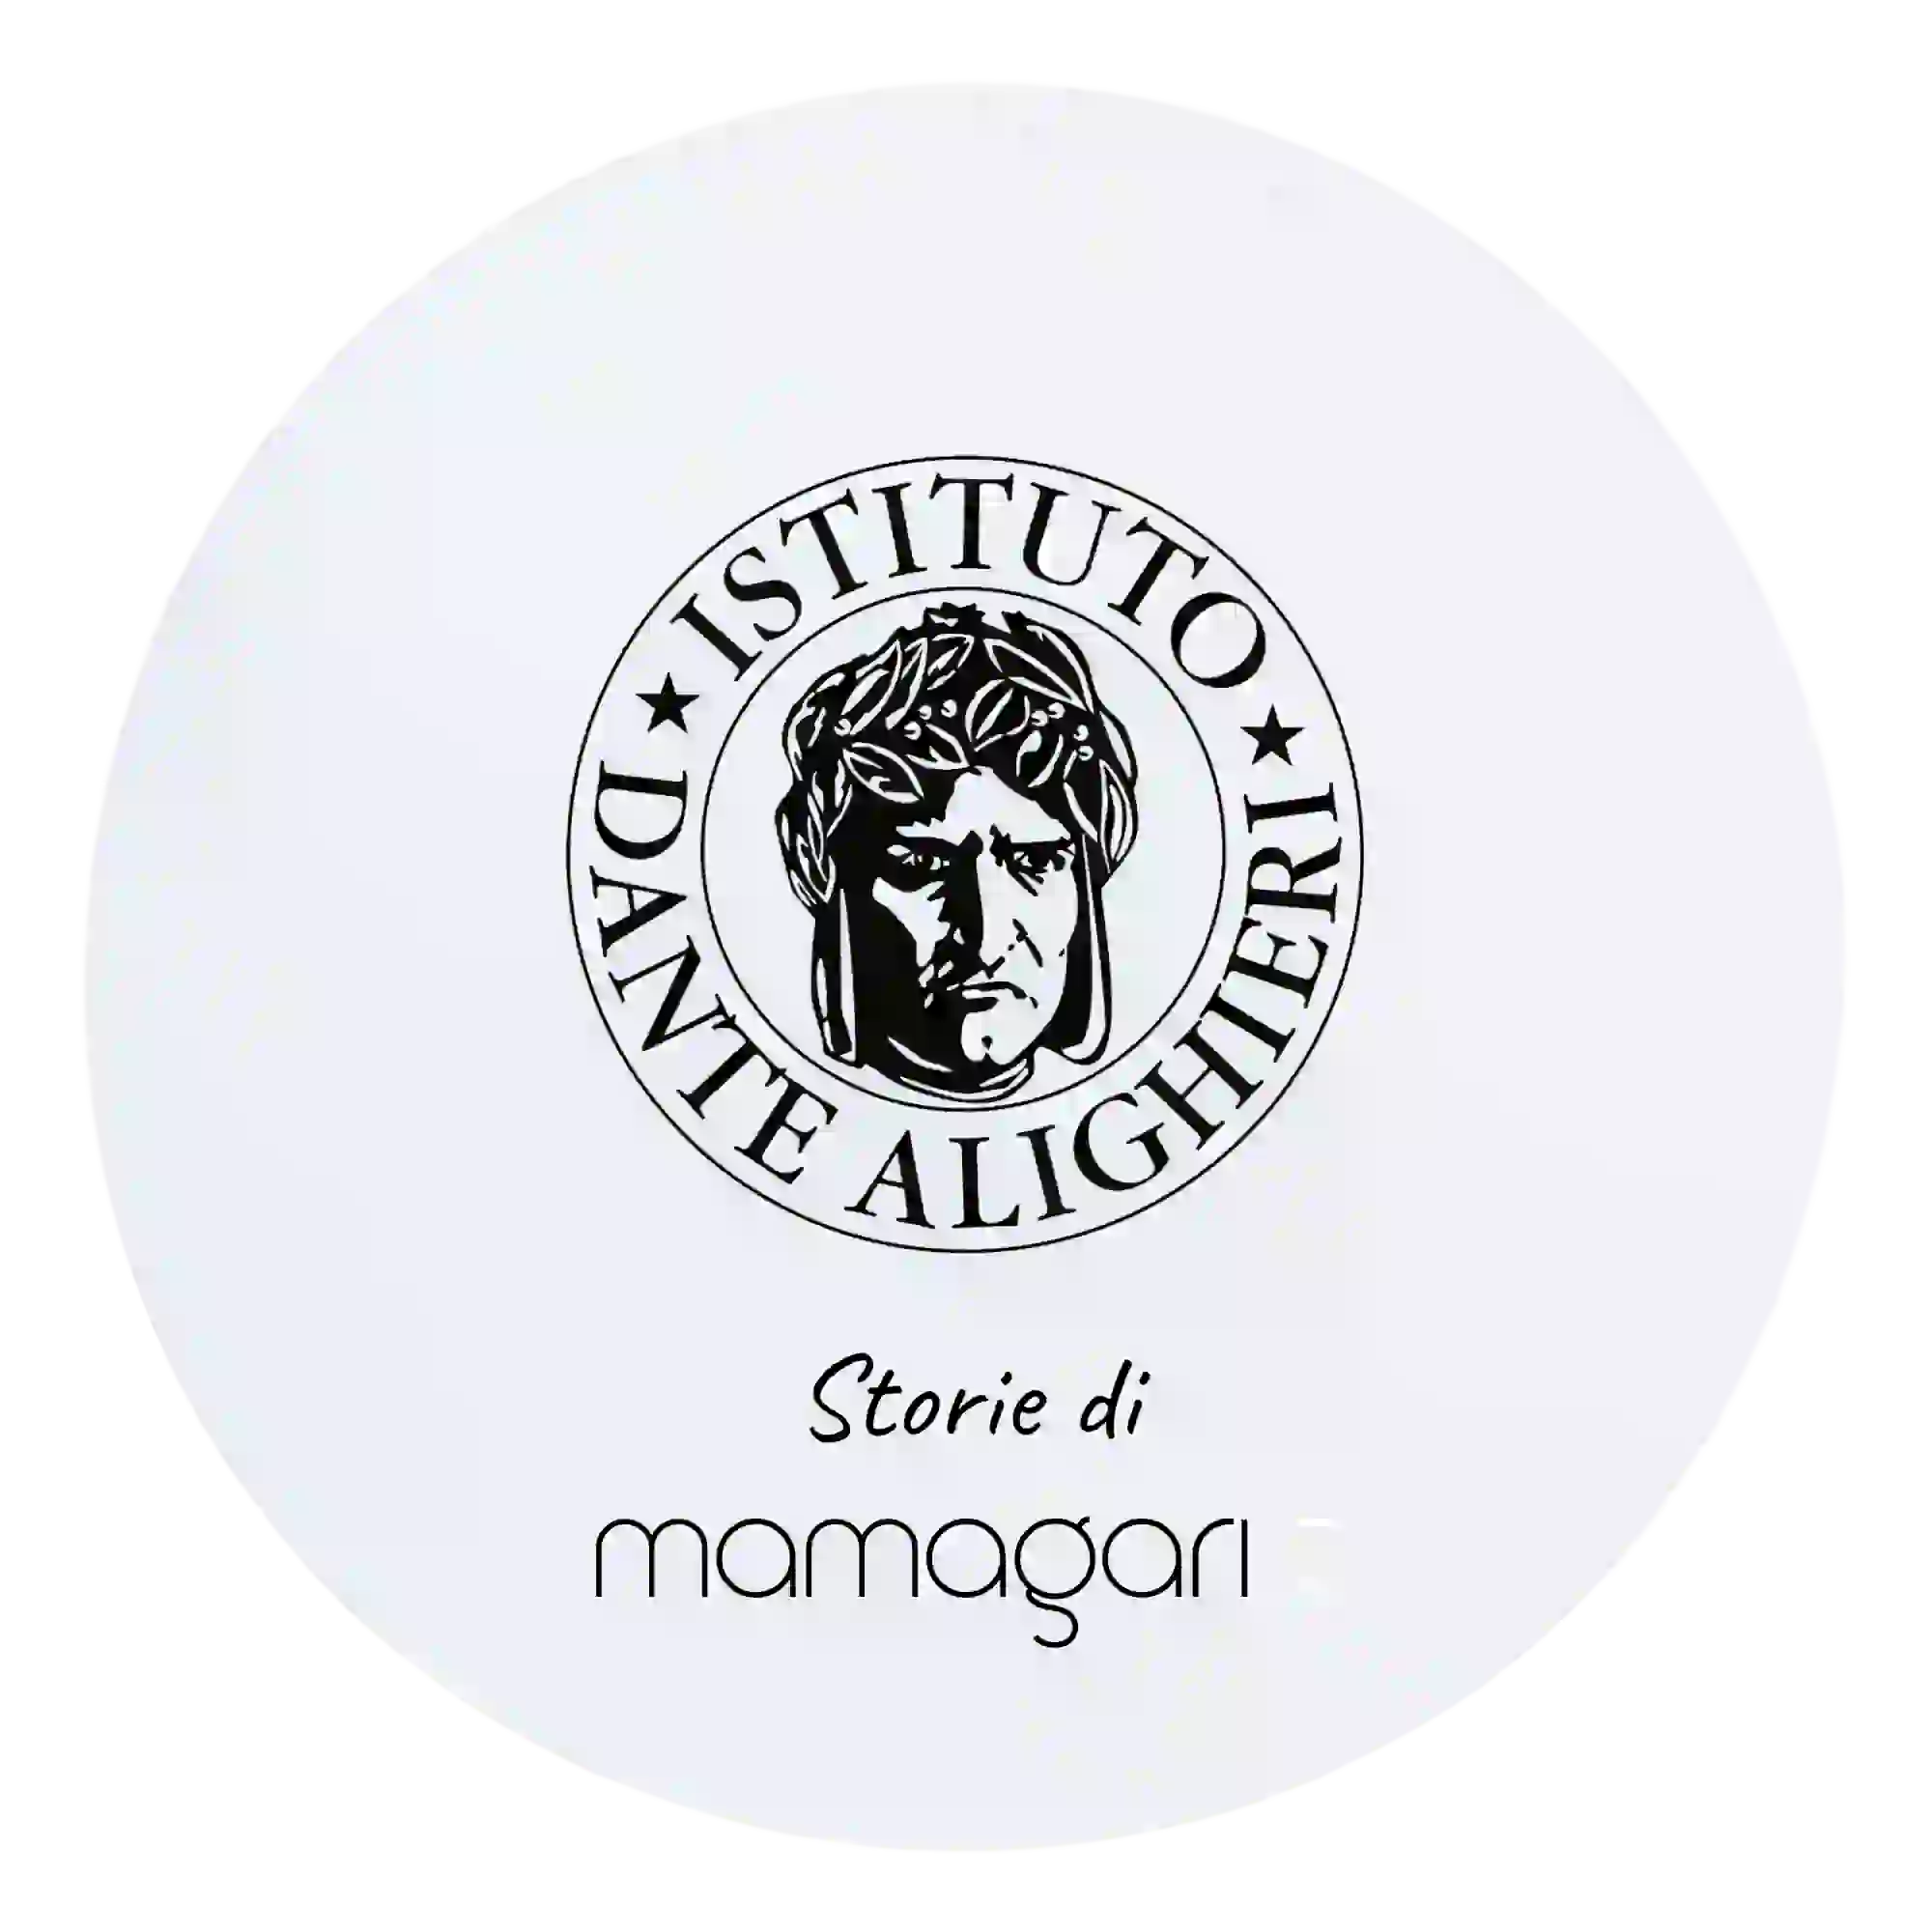 Istituto dante Alighieri Agenzia di web marketing italia seo google ads social e website